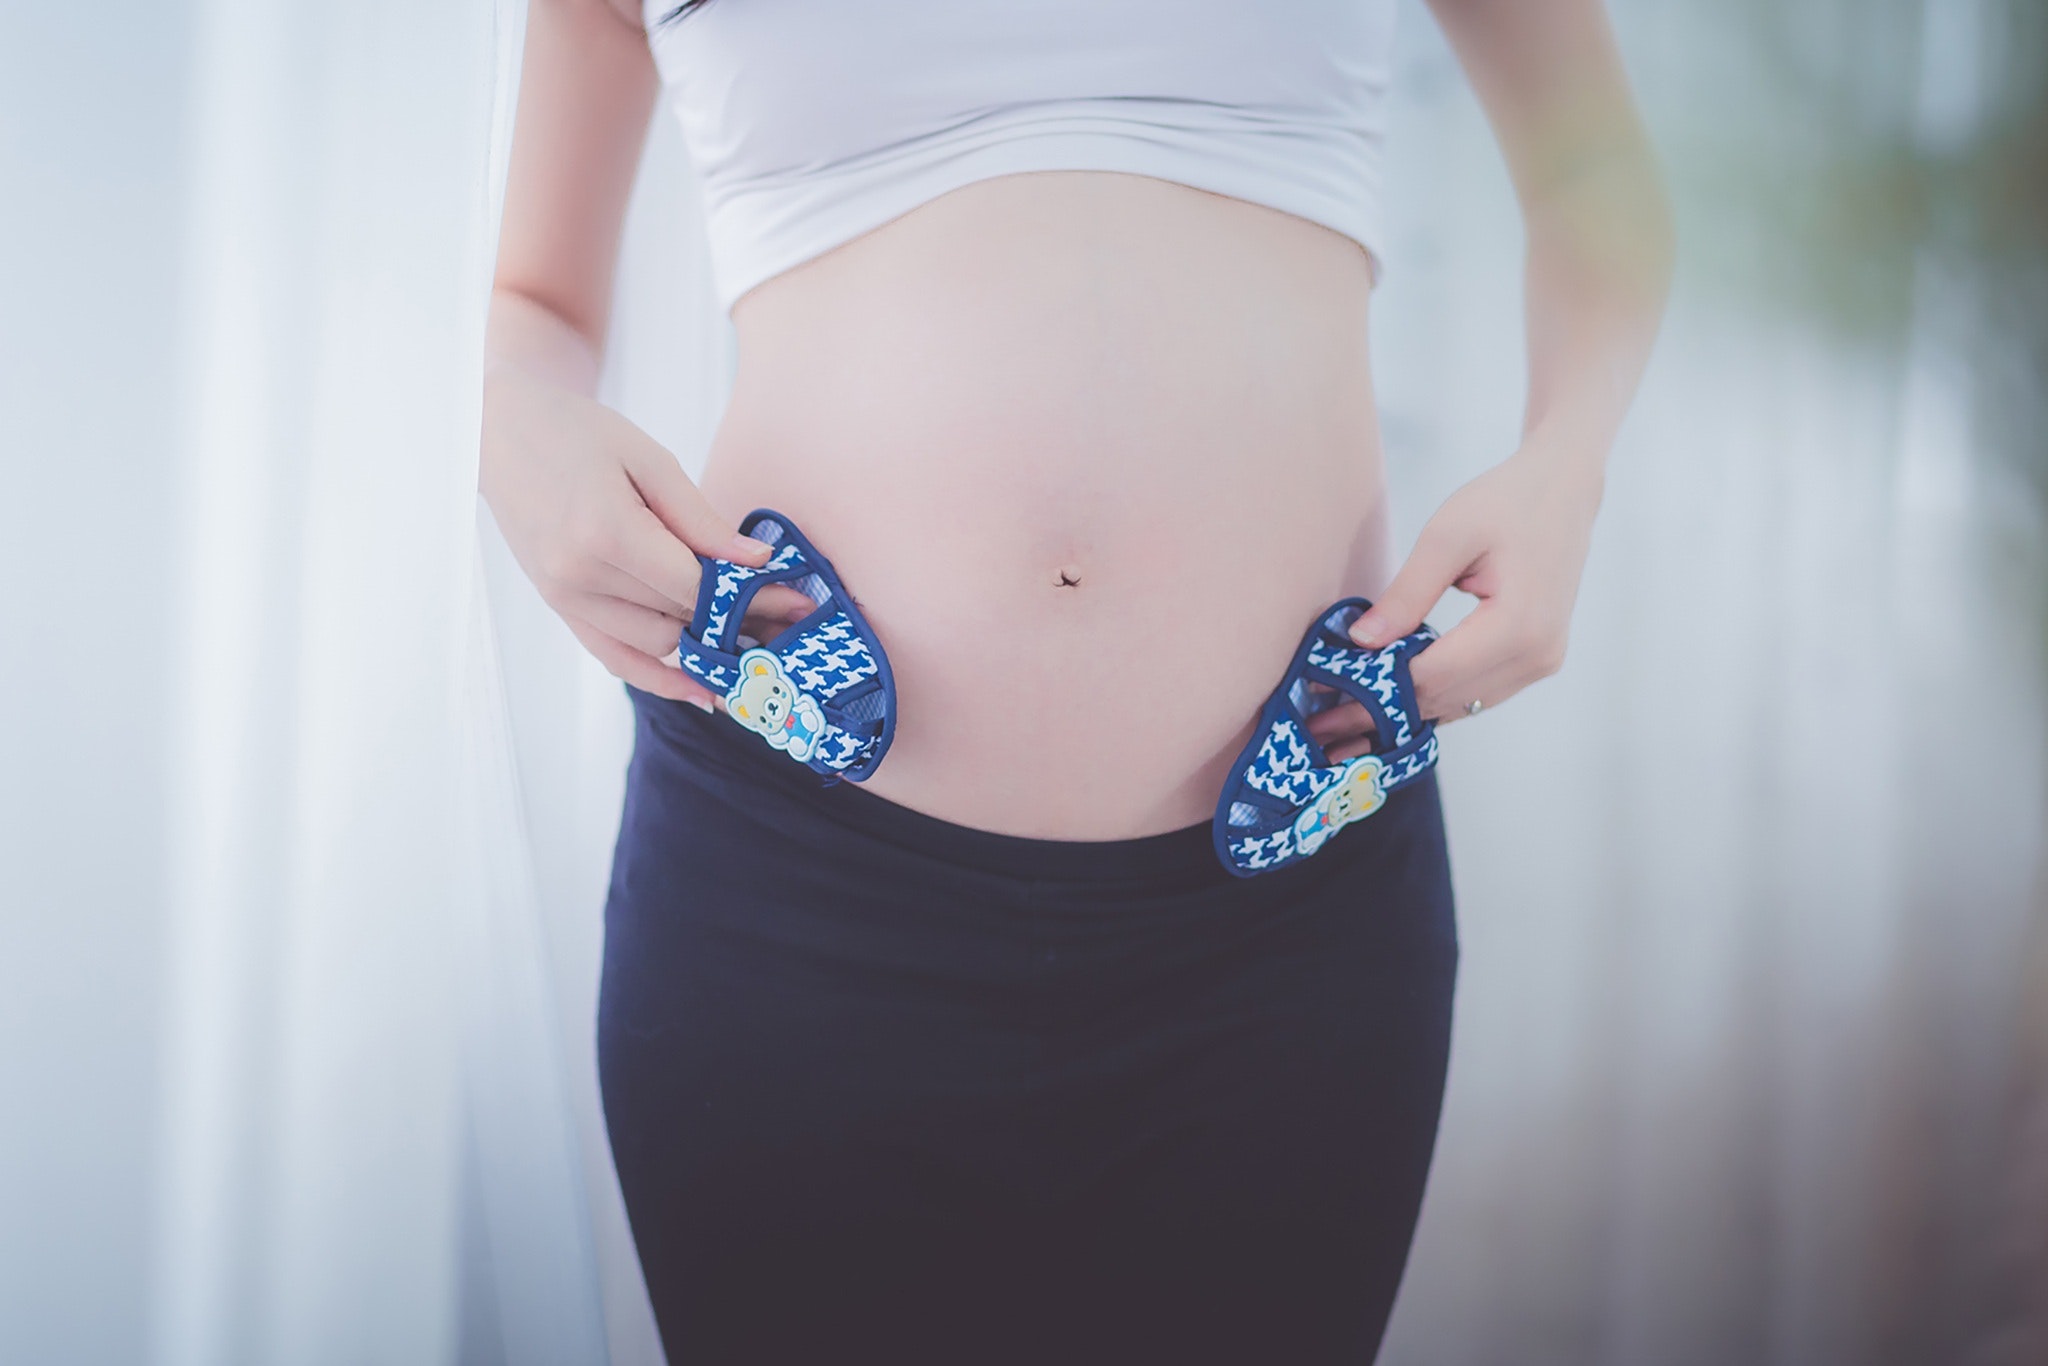 Доминанта беременности: как легко пережить эти 9 месяцев?